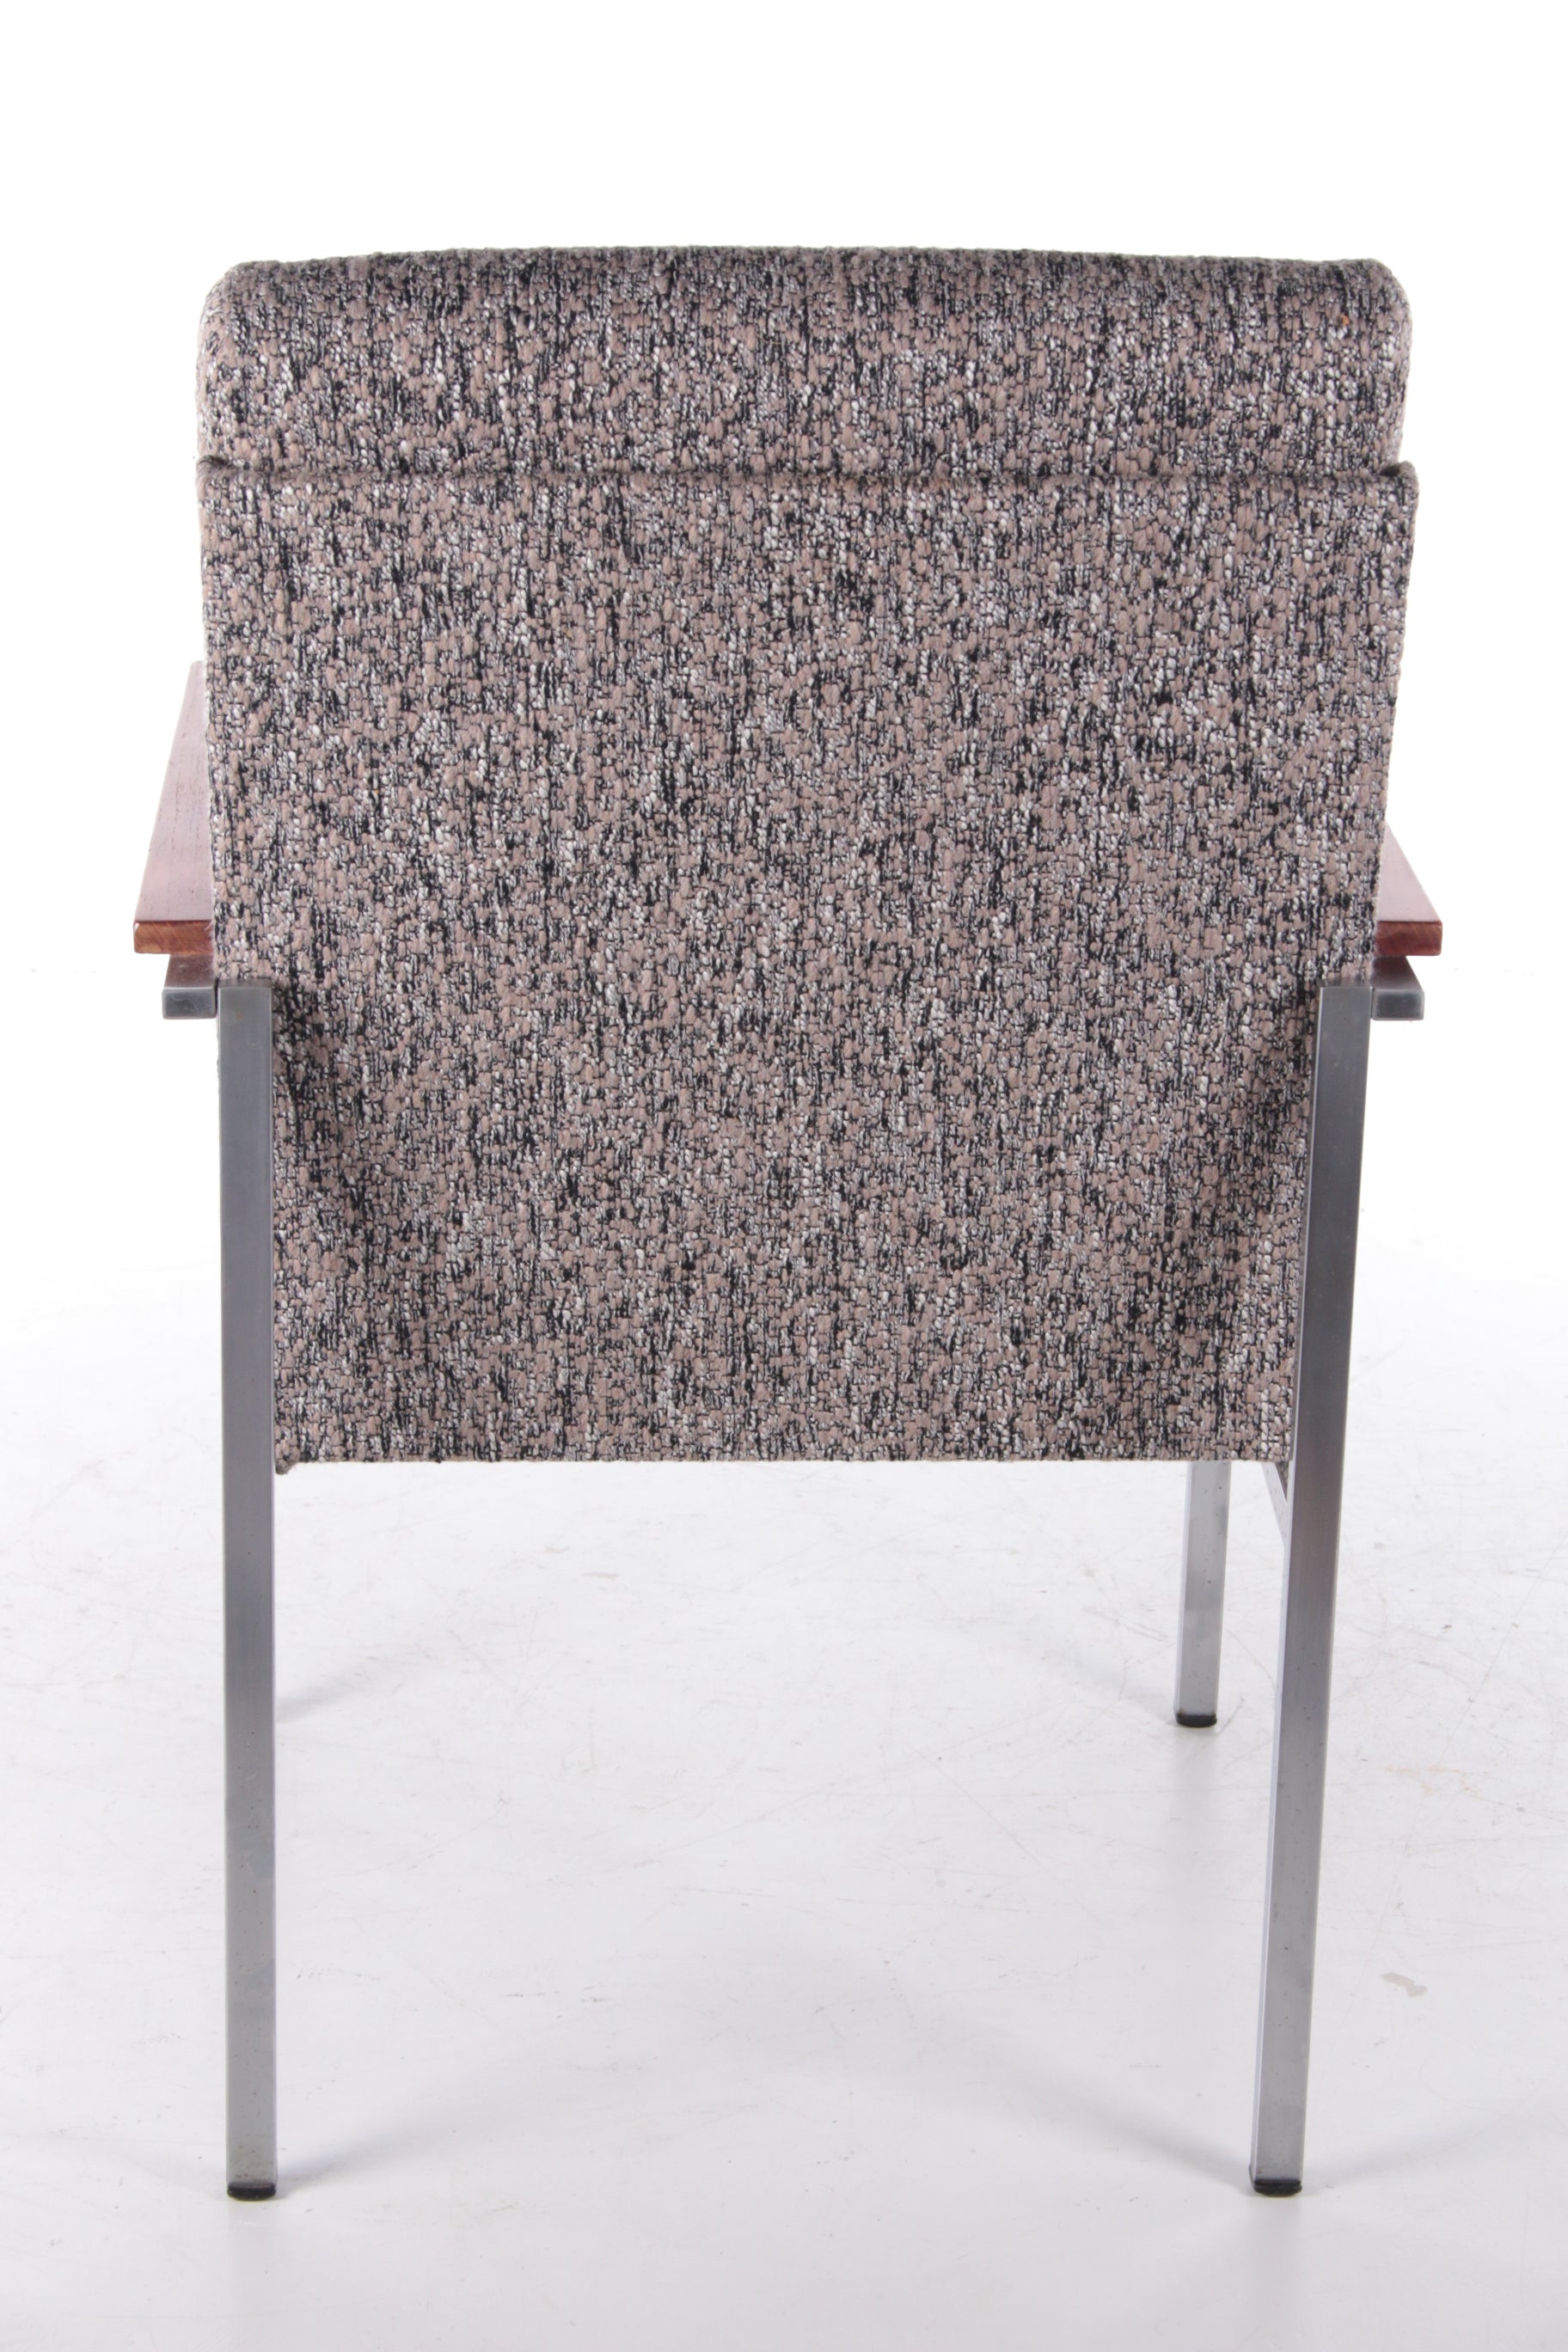 Design Gispen bureaustoel Coen de Vries, Model Nr 1266 achterkant